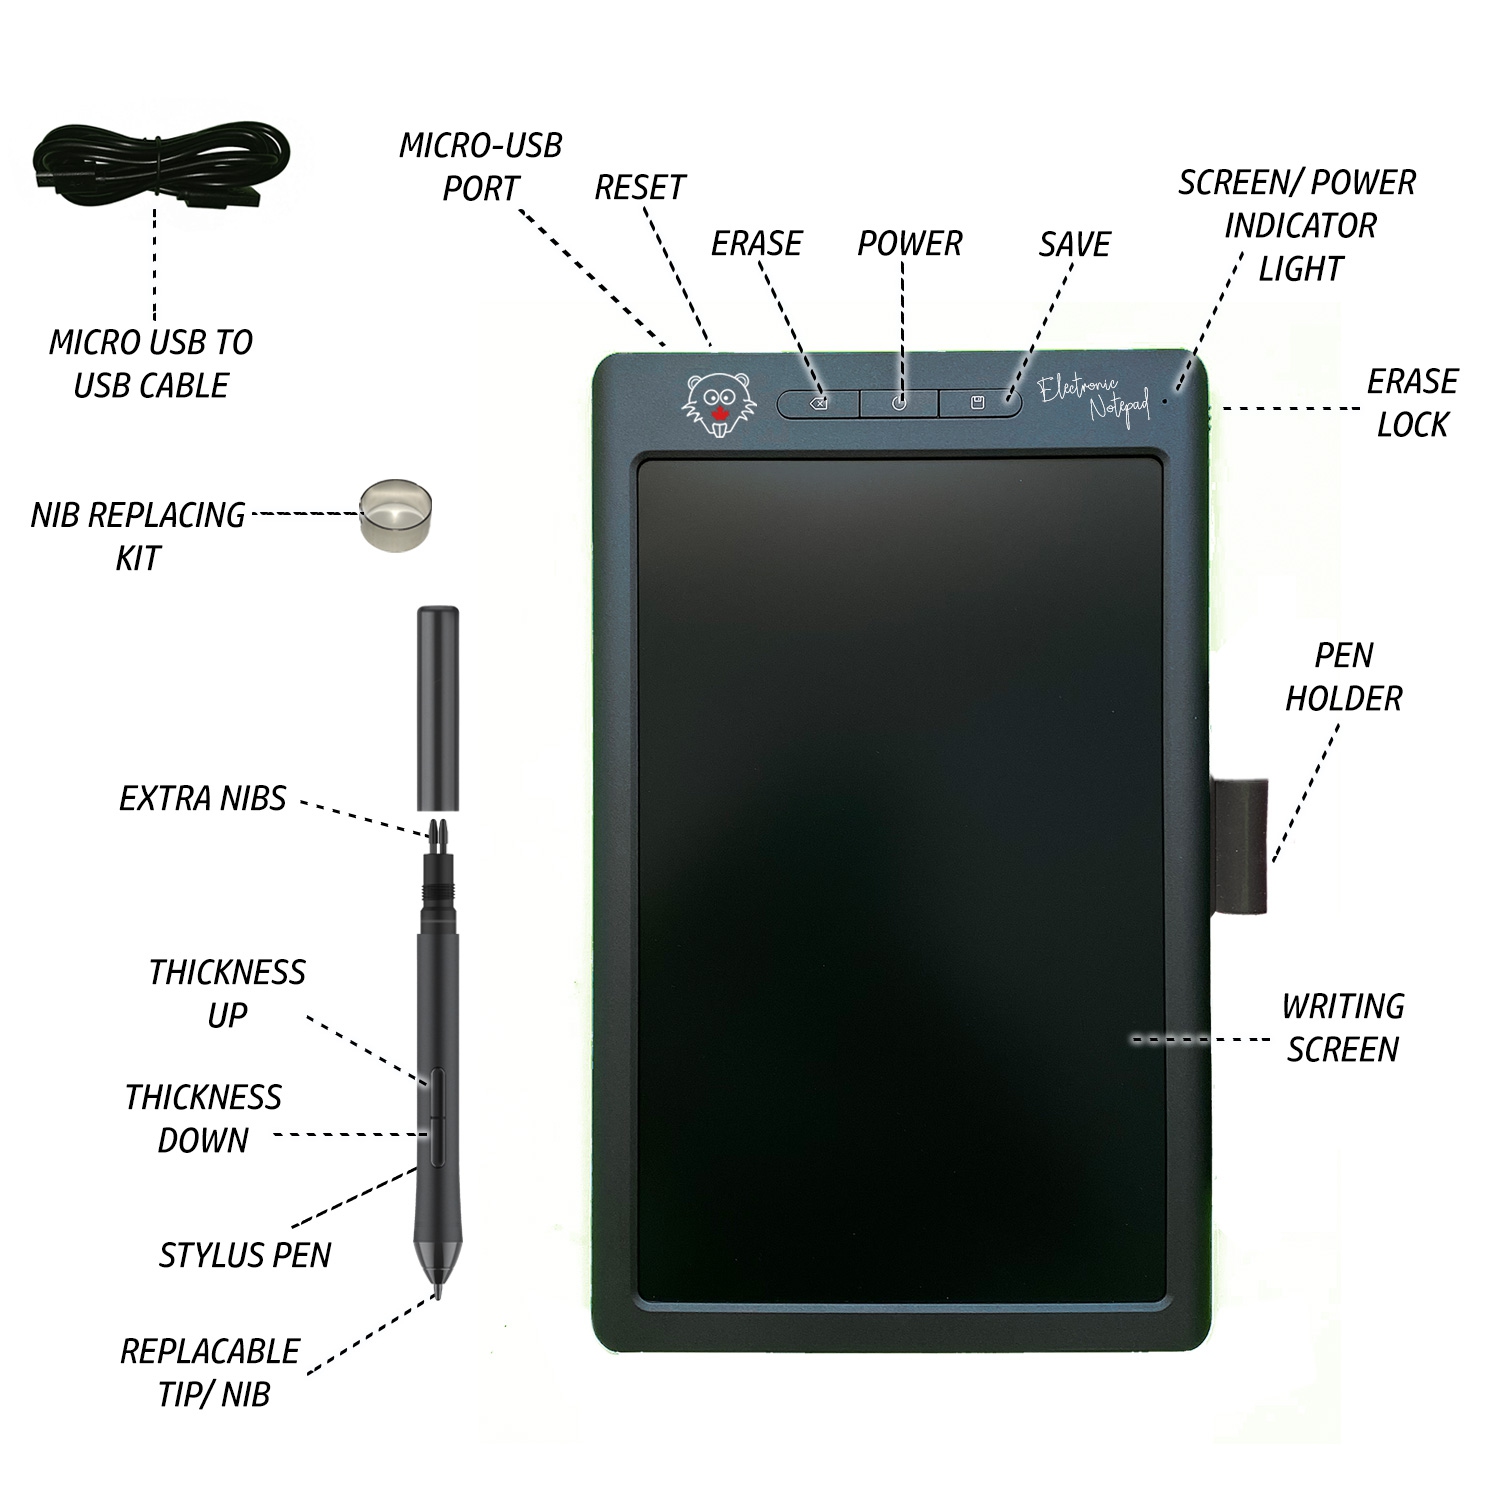 BeaverPad Tablette d'écriture LCD (eWriter) et tablette graphique 10 avec  fonction de sauvegarde, mémoire et Bluetooth